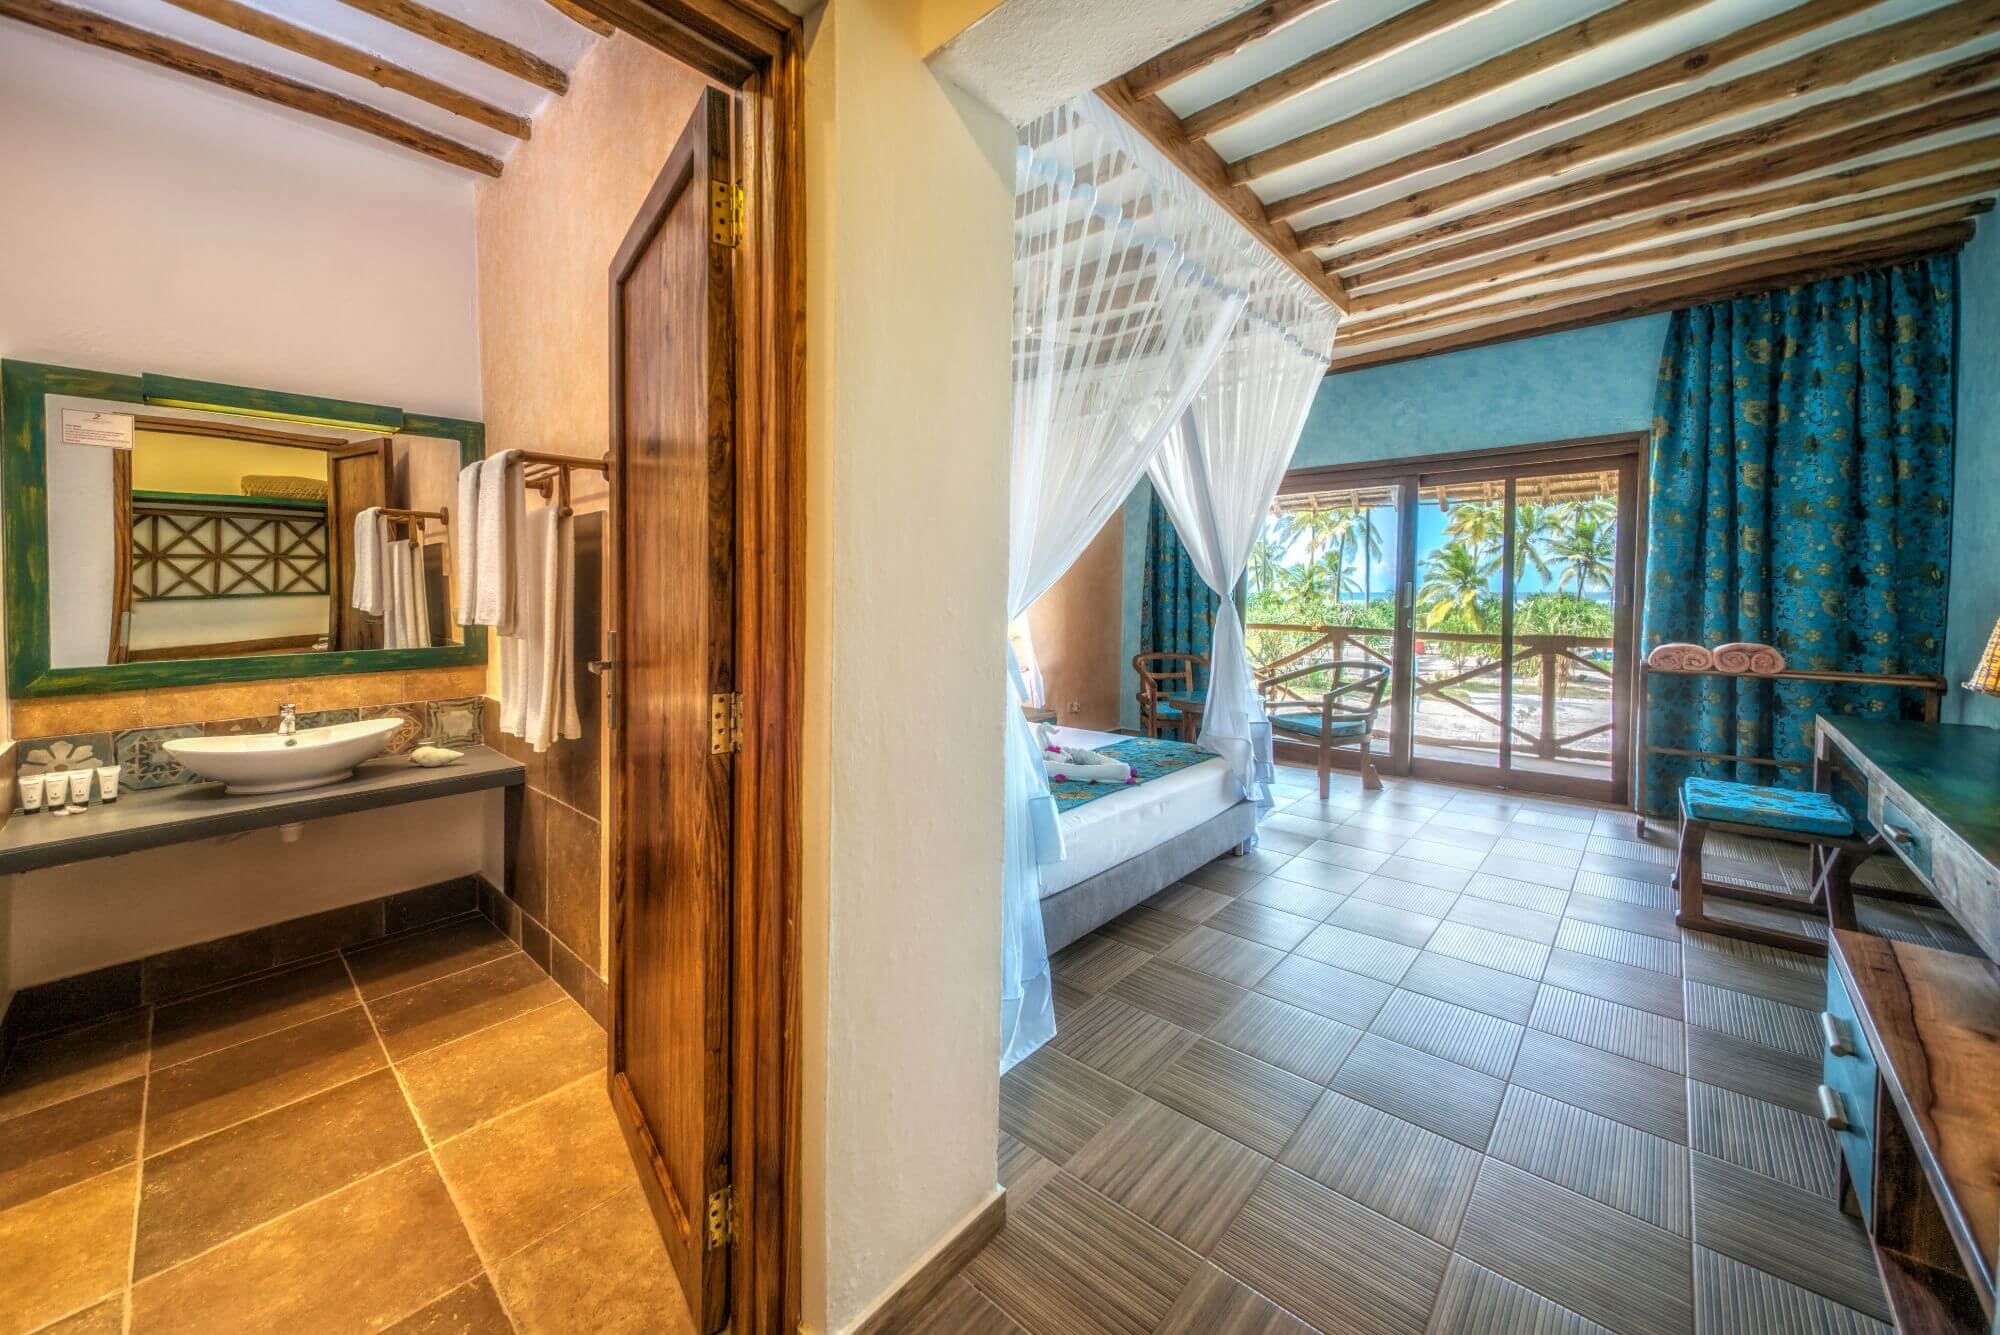 Zanzibar Queen Hotel - Room (2) - 